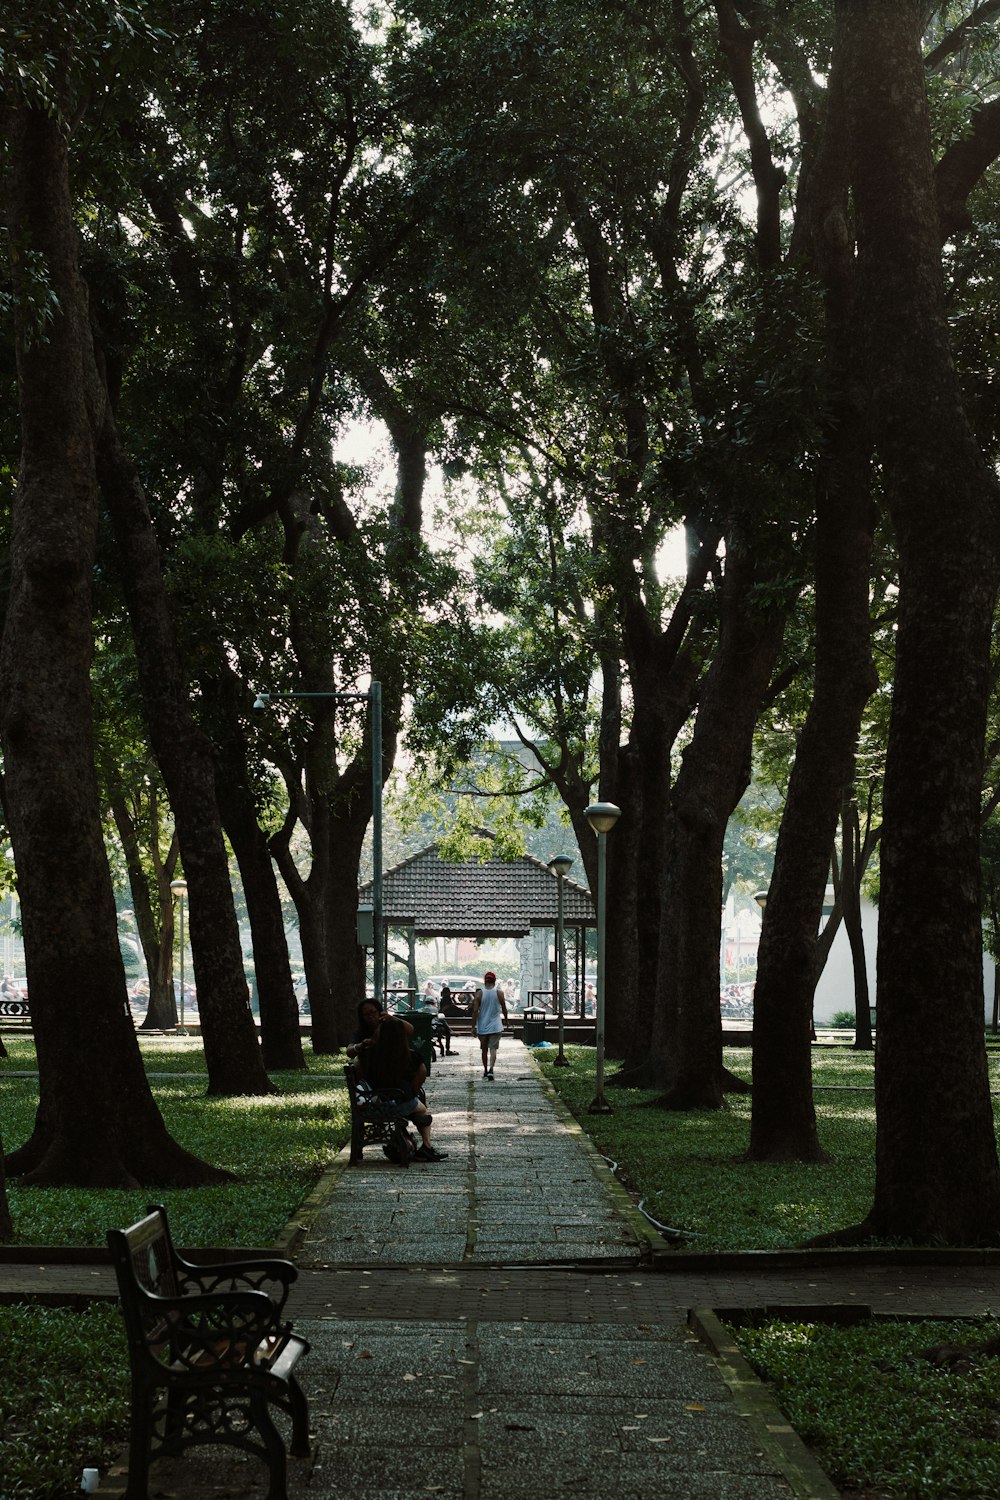 Ein Park mit Bänken, Bäumen und Menschen, die spazieren gehen